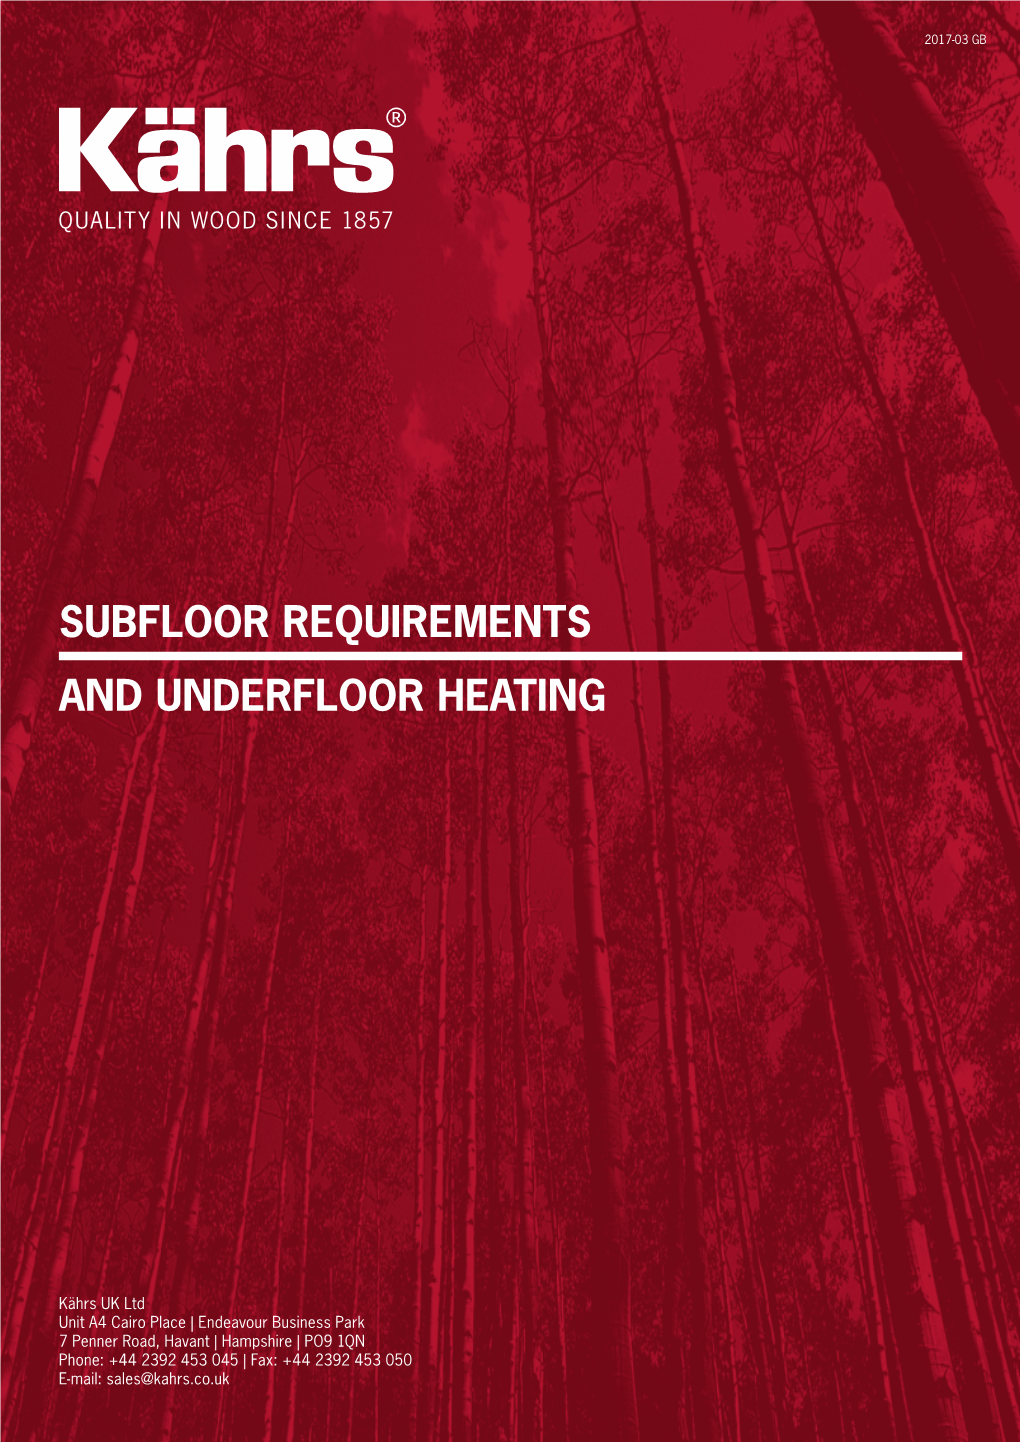 Subfloor Requirements and Underfloor Heating